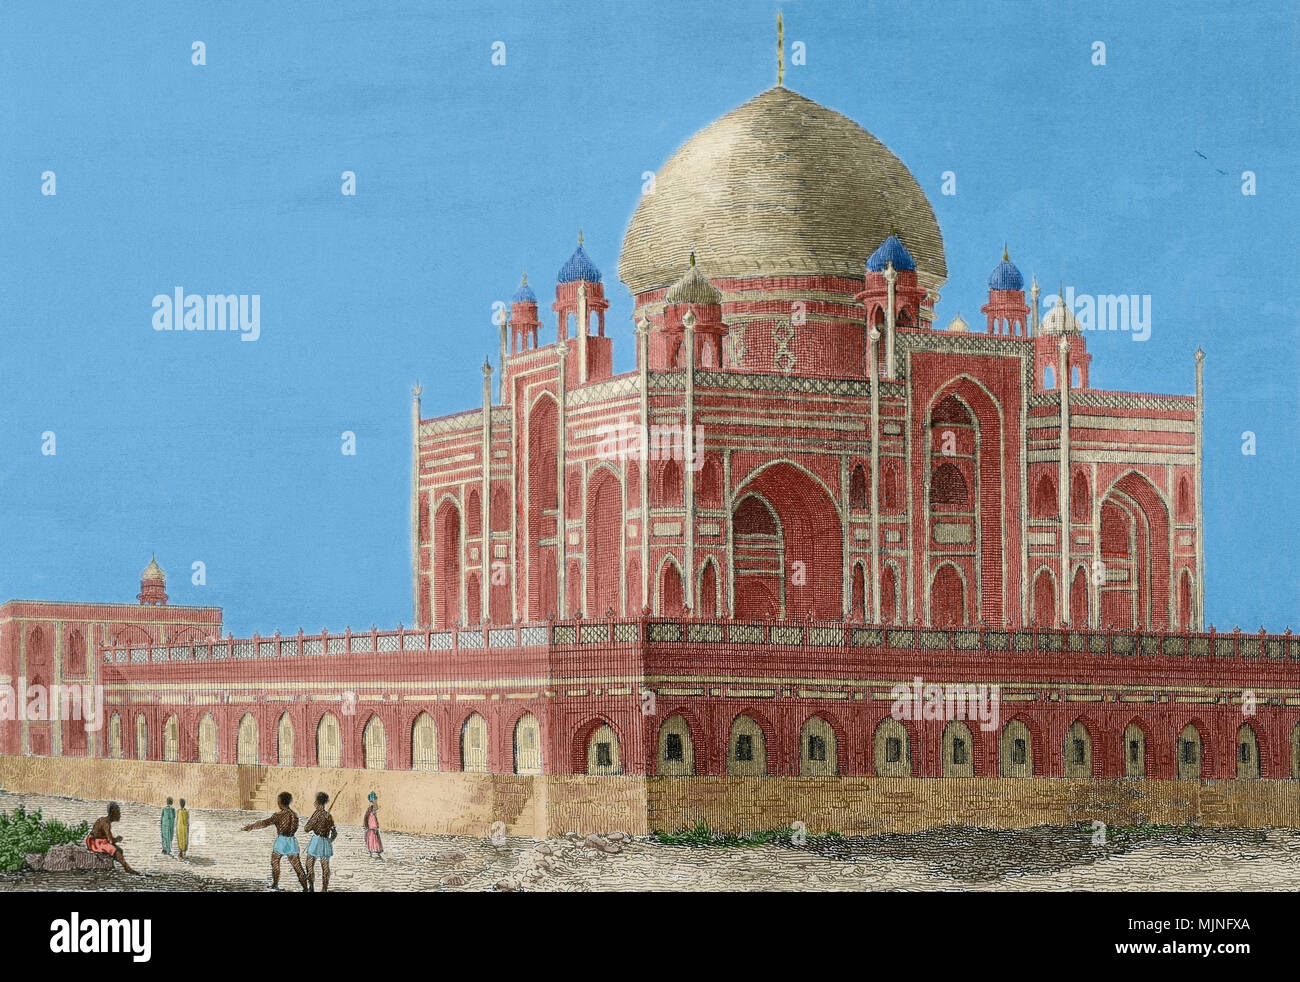 Imperatore Mughal Humayun (Kabul, 1508-Delhi, 1556). Secondo l'imperatore dell'Impero Mughal. Egli ha governato in Afghanistan, Pakistan e territori dell'India del Nord dal 1530 al 1540. Tomba di Humayun a Delhi, India. Esso è stato commissionato dalla sua prima moglie e chief consorte, Imperatrice Bega iniziata (Haji iniziata) nel 1569-1570 e progettato dall'architetto persiano Mirak Mirza Ghiyas. Incisione di Lemaitre ha dopo Kinnewel. Dal Panorama Universal-India, 1845. Colorazione successiva. Foto Stock